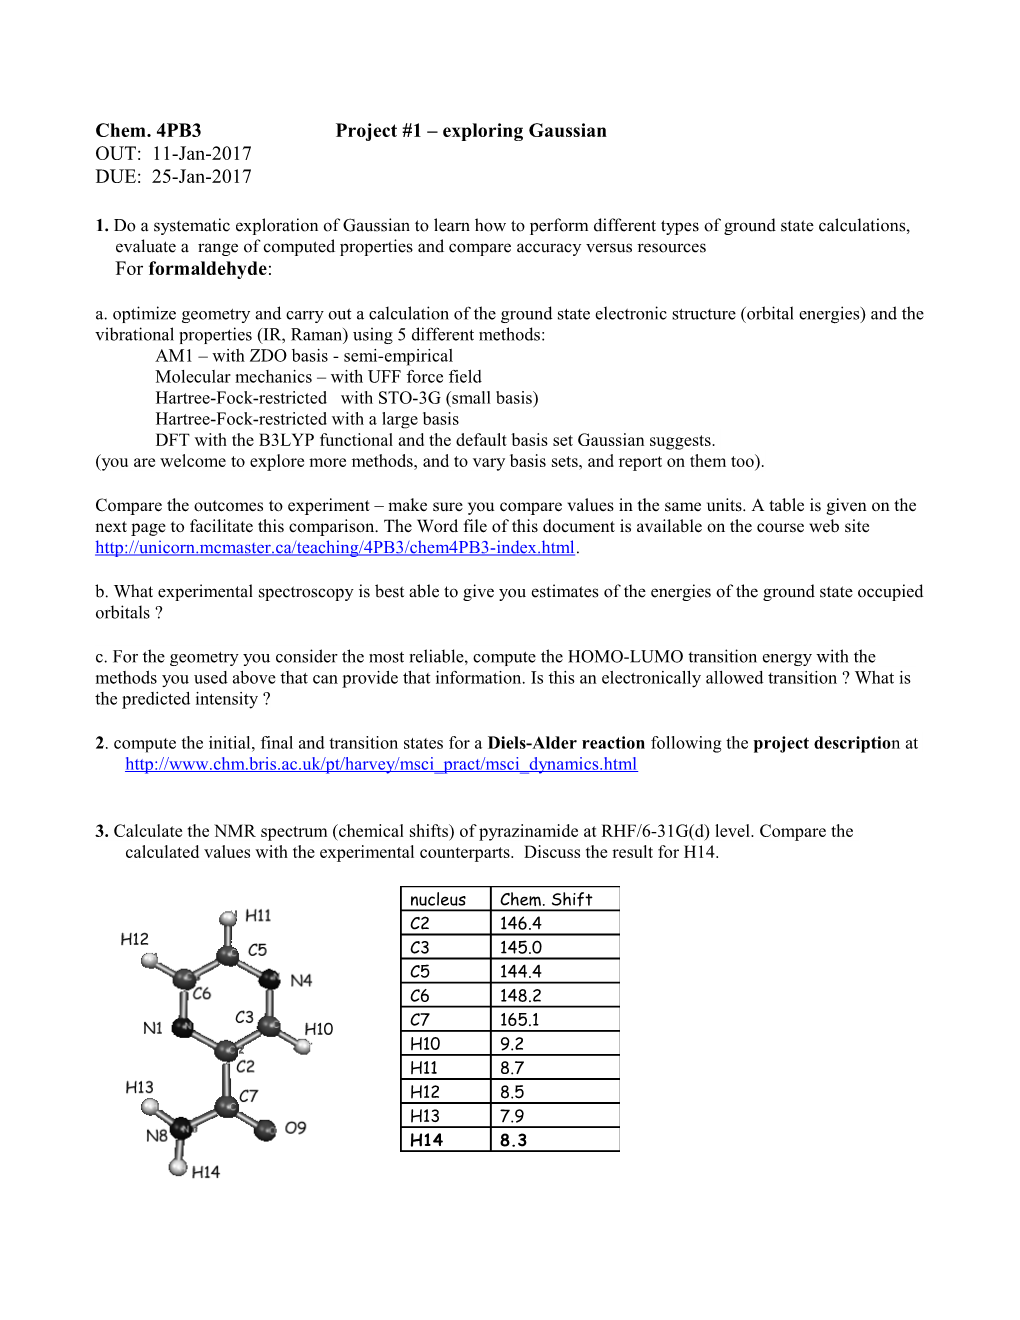 Chemistry 4PB3/6PB3 -Computational Methods